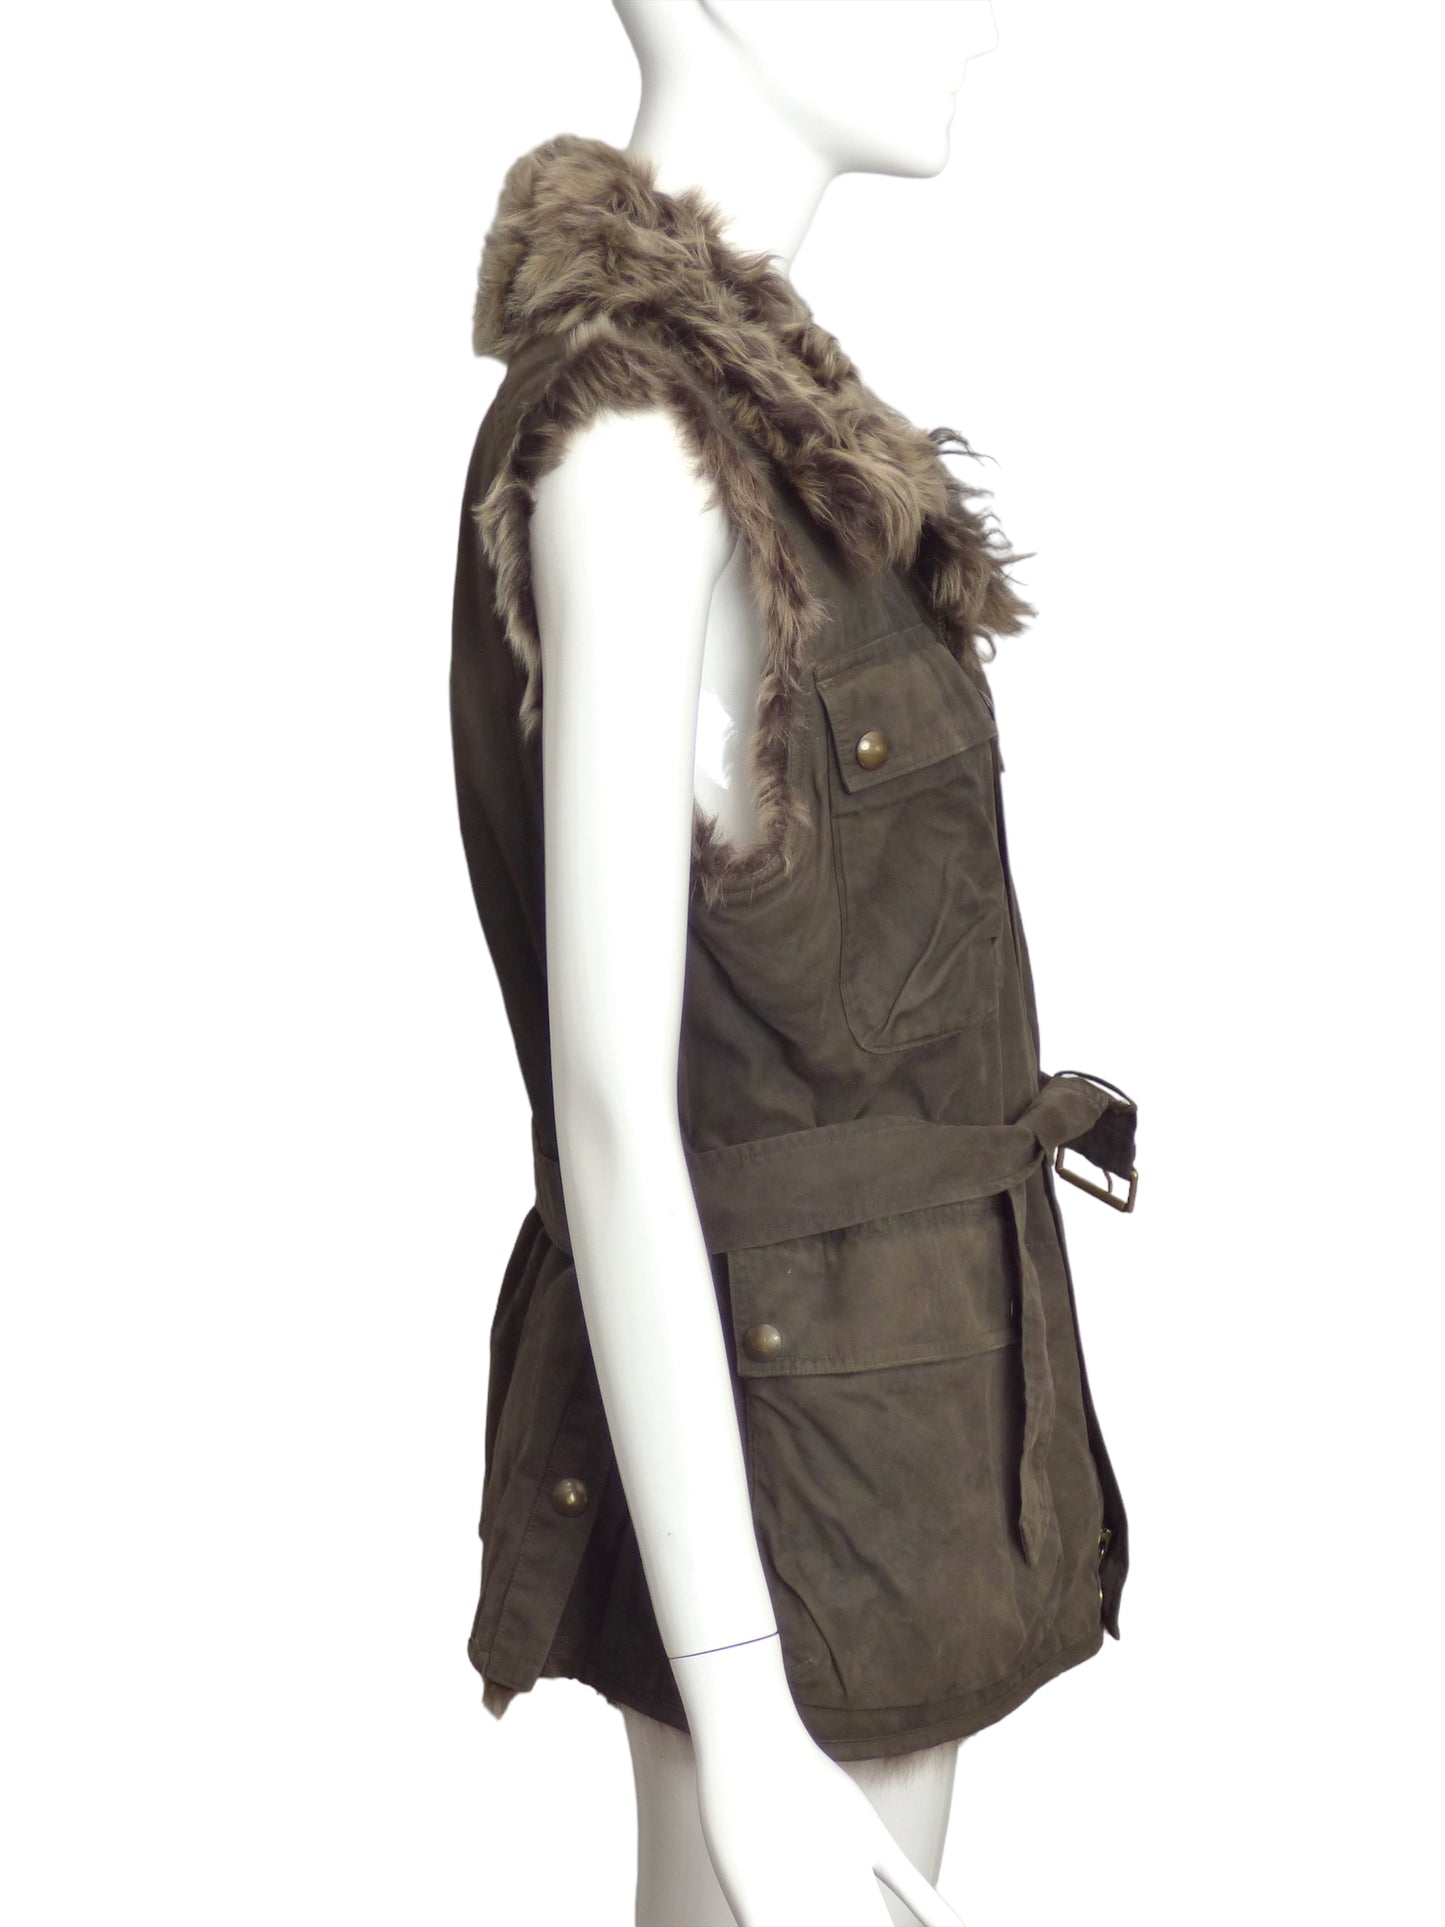 RALPH LAUREN- Cotton & Fur Vest, Size 8